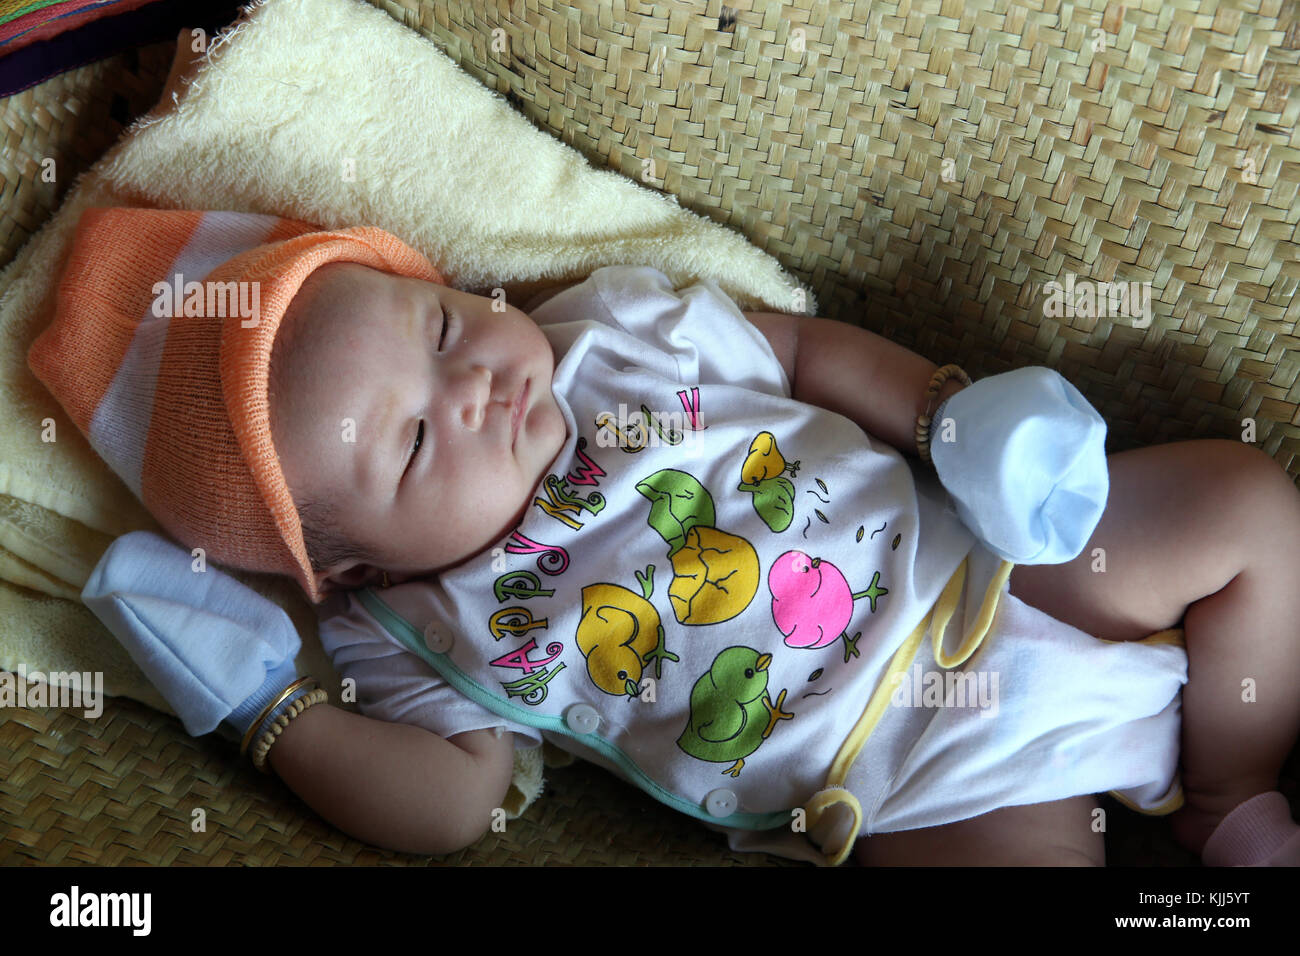 Un mois à dormir bébé vietnamien. Thay Ninh. Le Vietnam. Banque D'Images